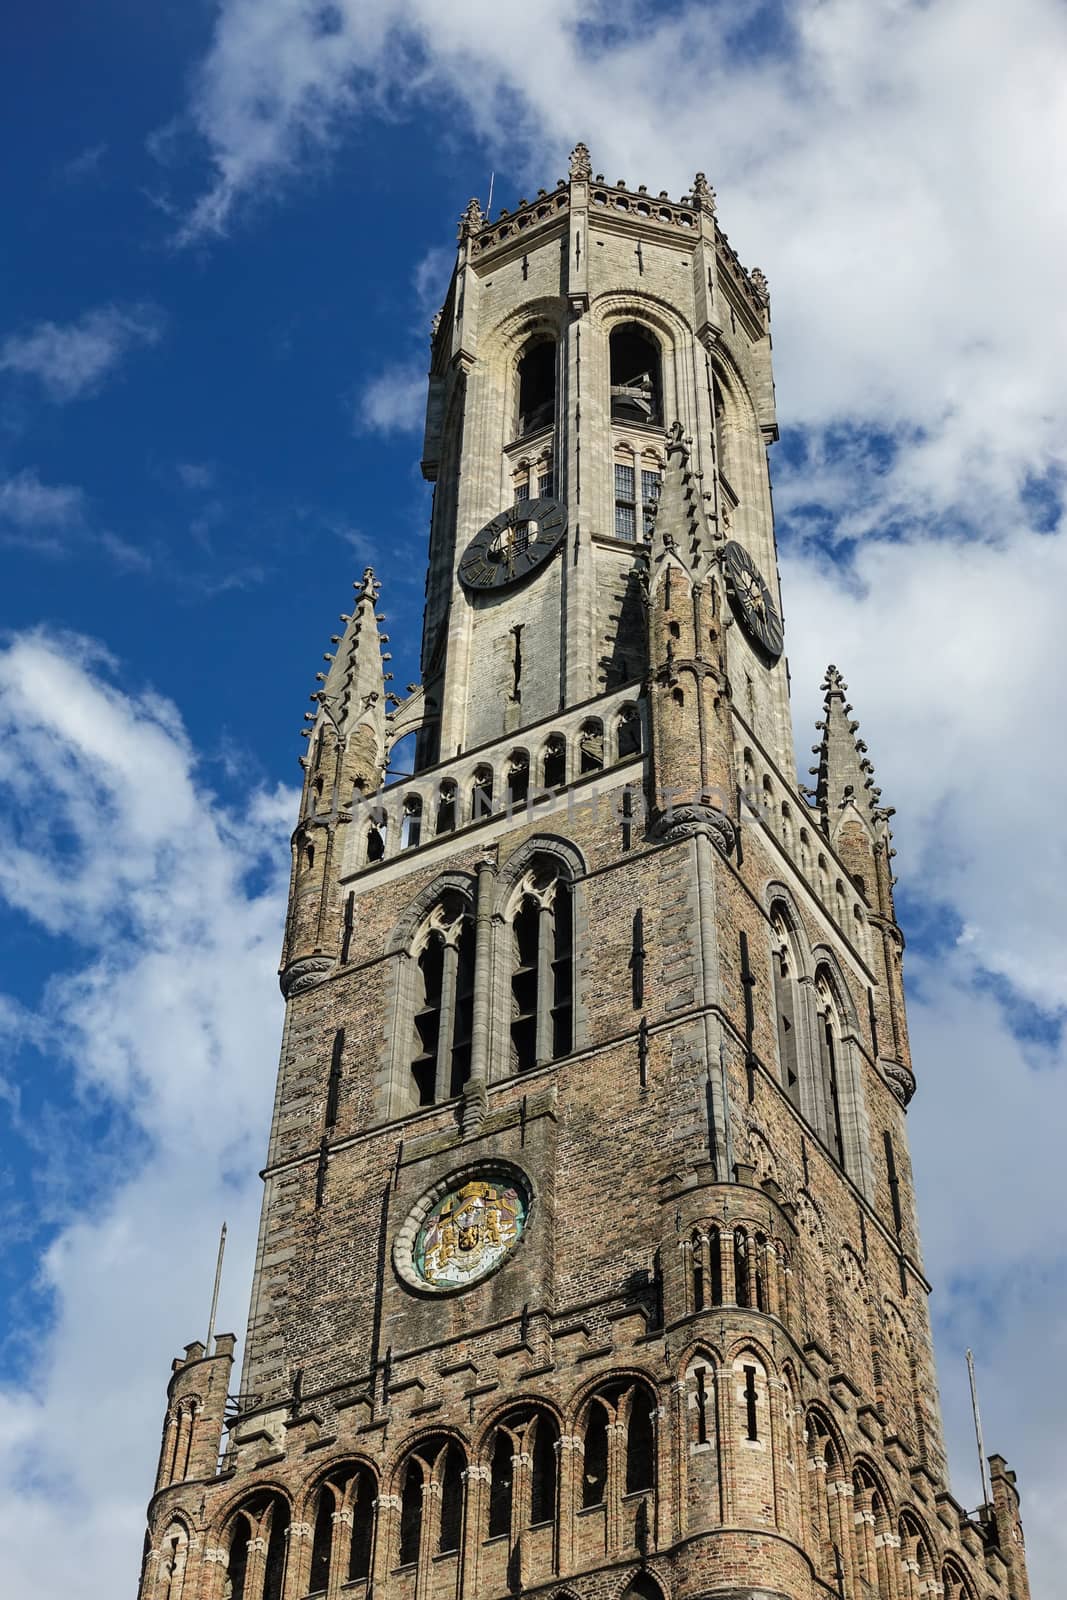 Top of tower of Belfry, Bruges, Flanders, Belgium. by Claudine